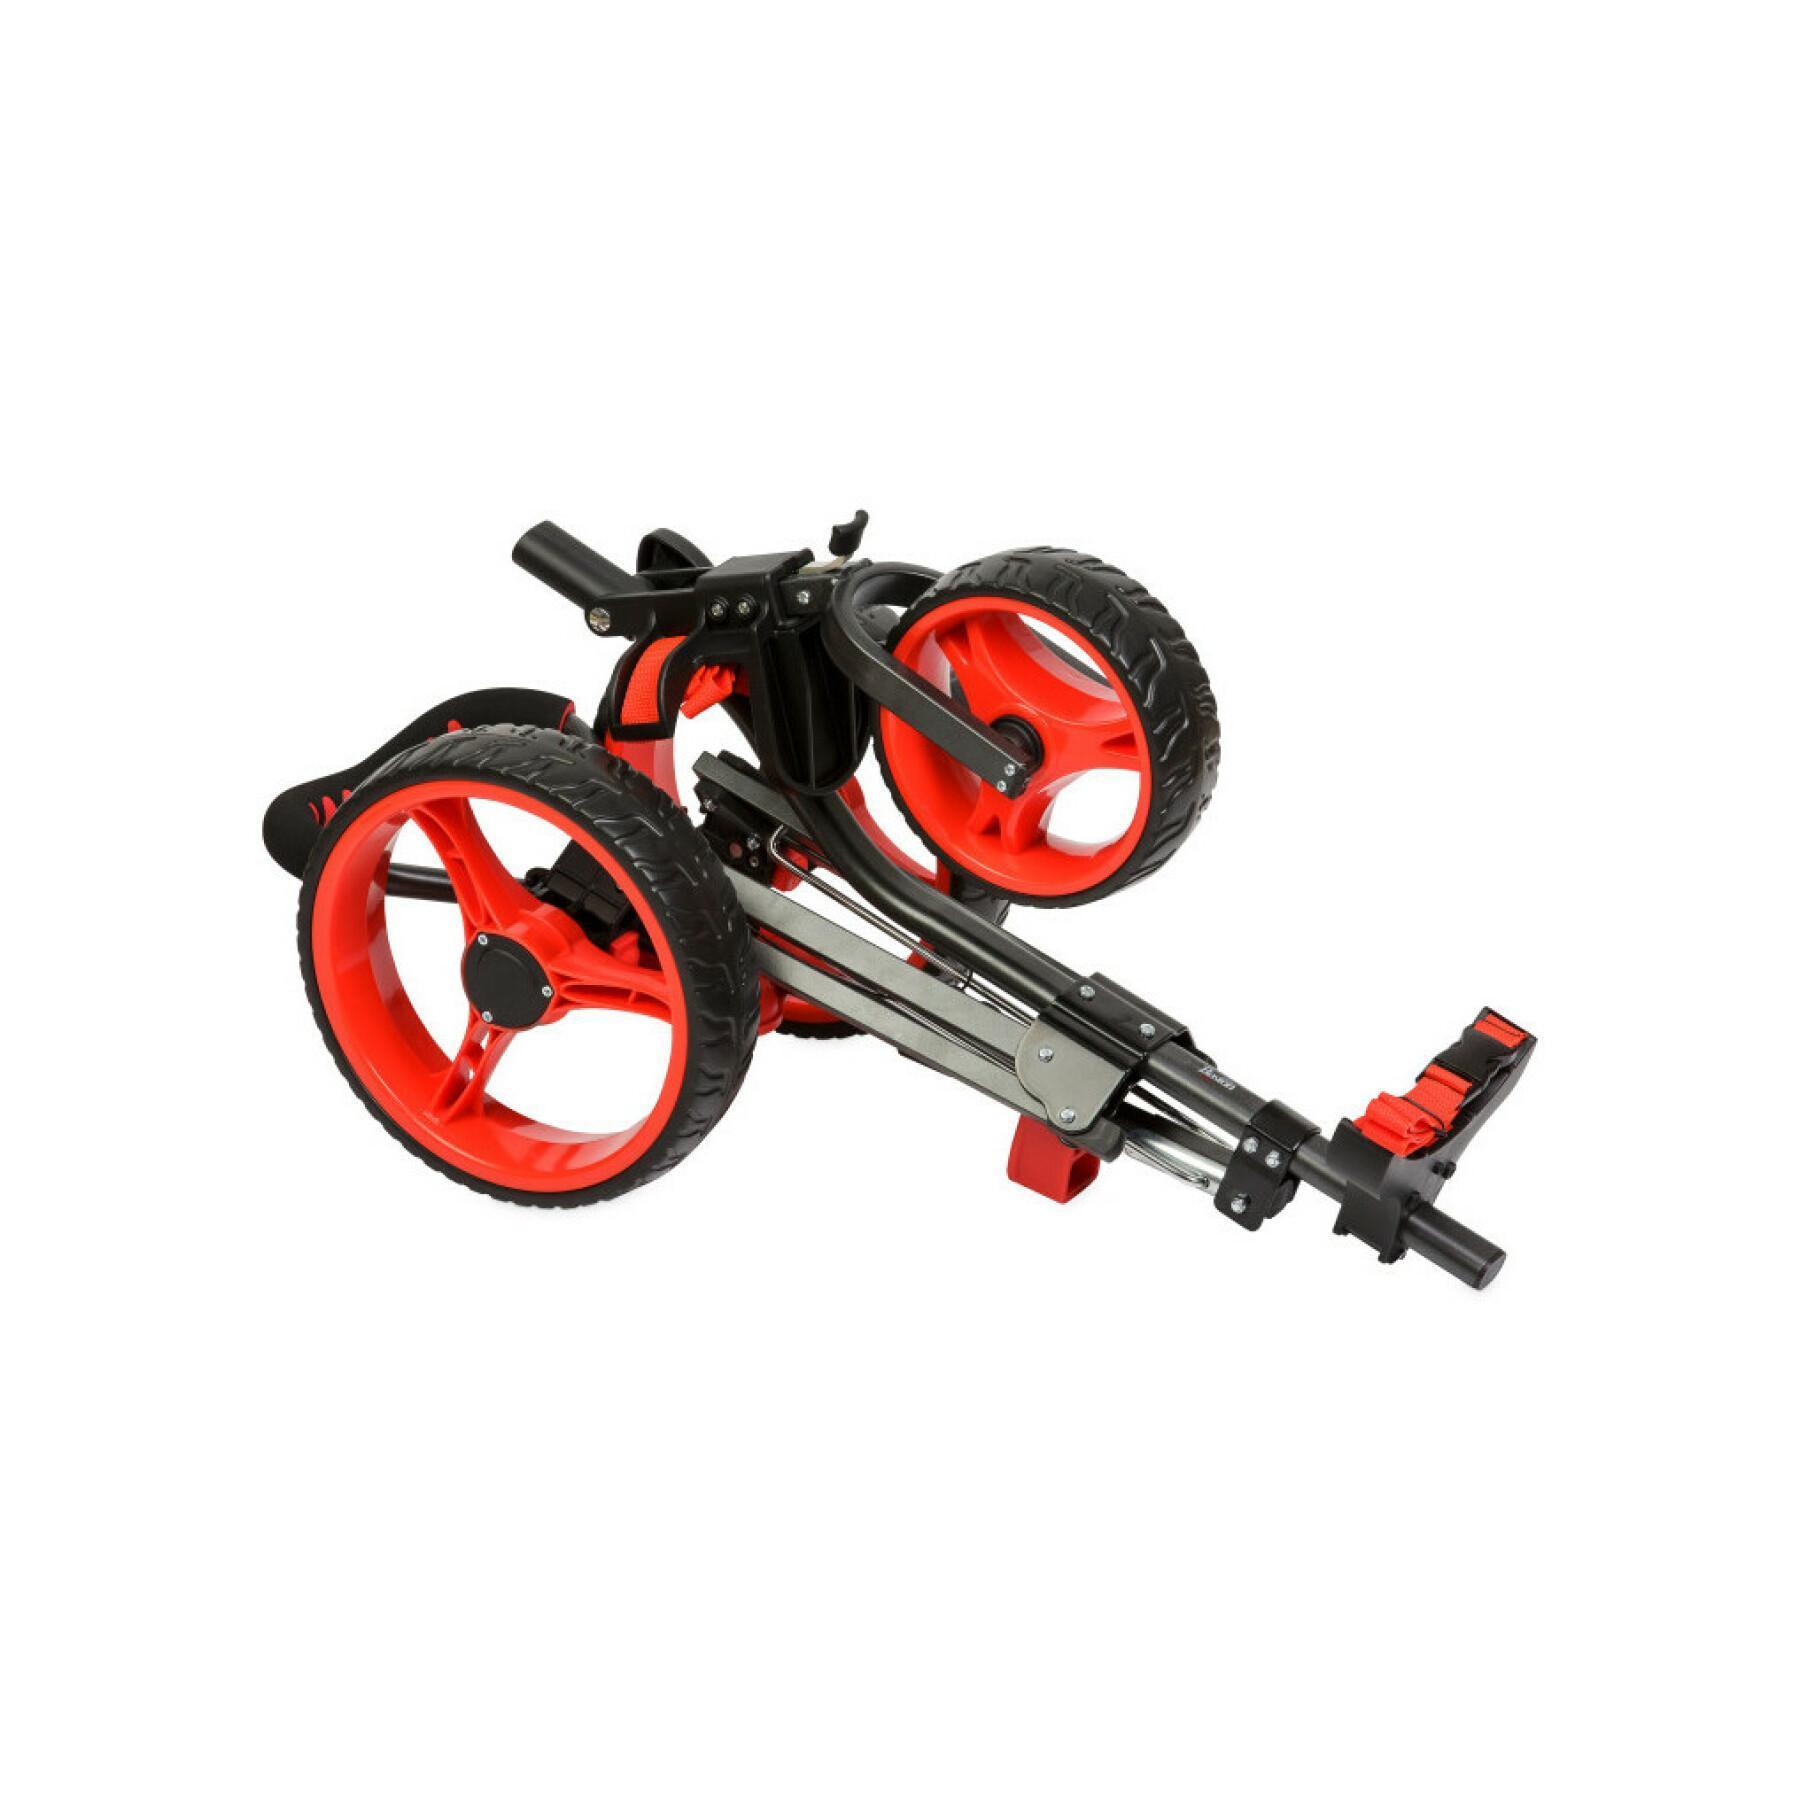 Wózek ręczny dla dzieci Boston Golf boston - 3 roues